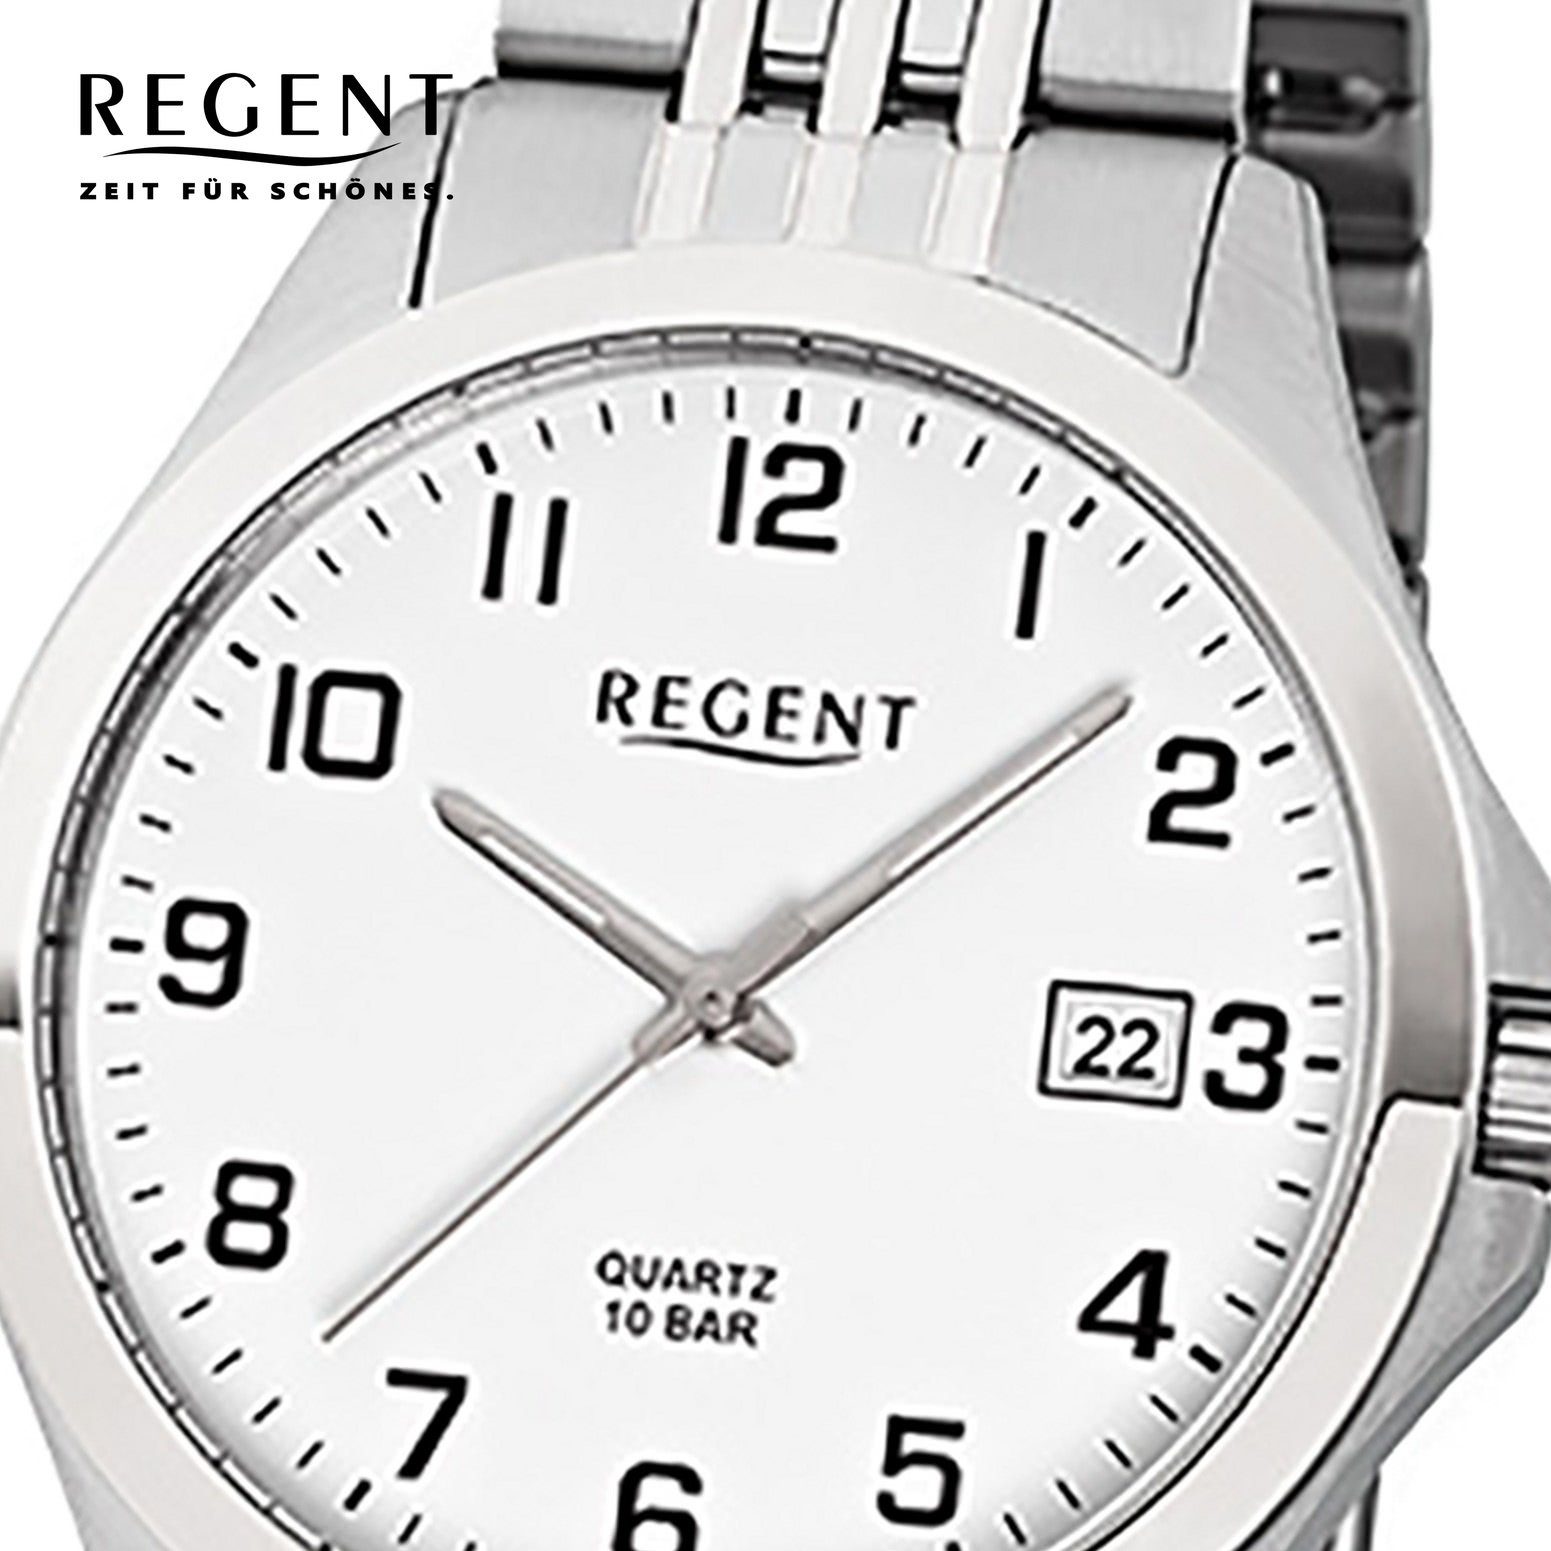 Herren-Armbanduhr Regent grau Analog, silber (ca. rund, Regent mittel Herren Armbanduhr Quarzuhr 39mm), Edelstahlarmband